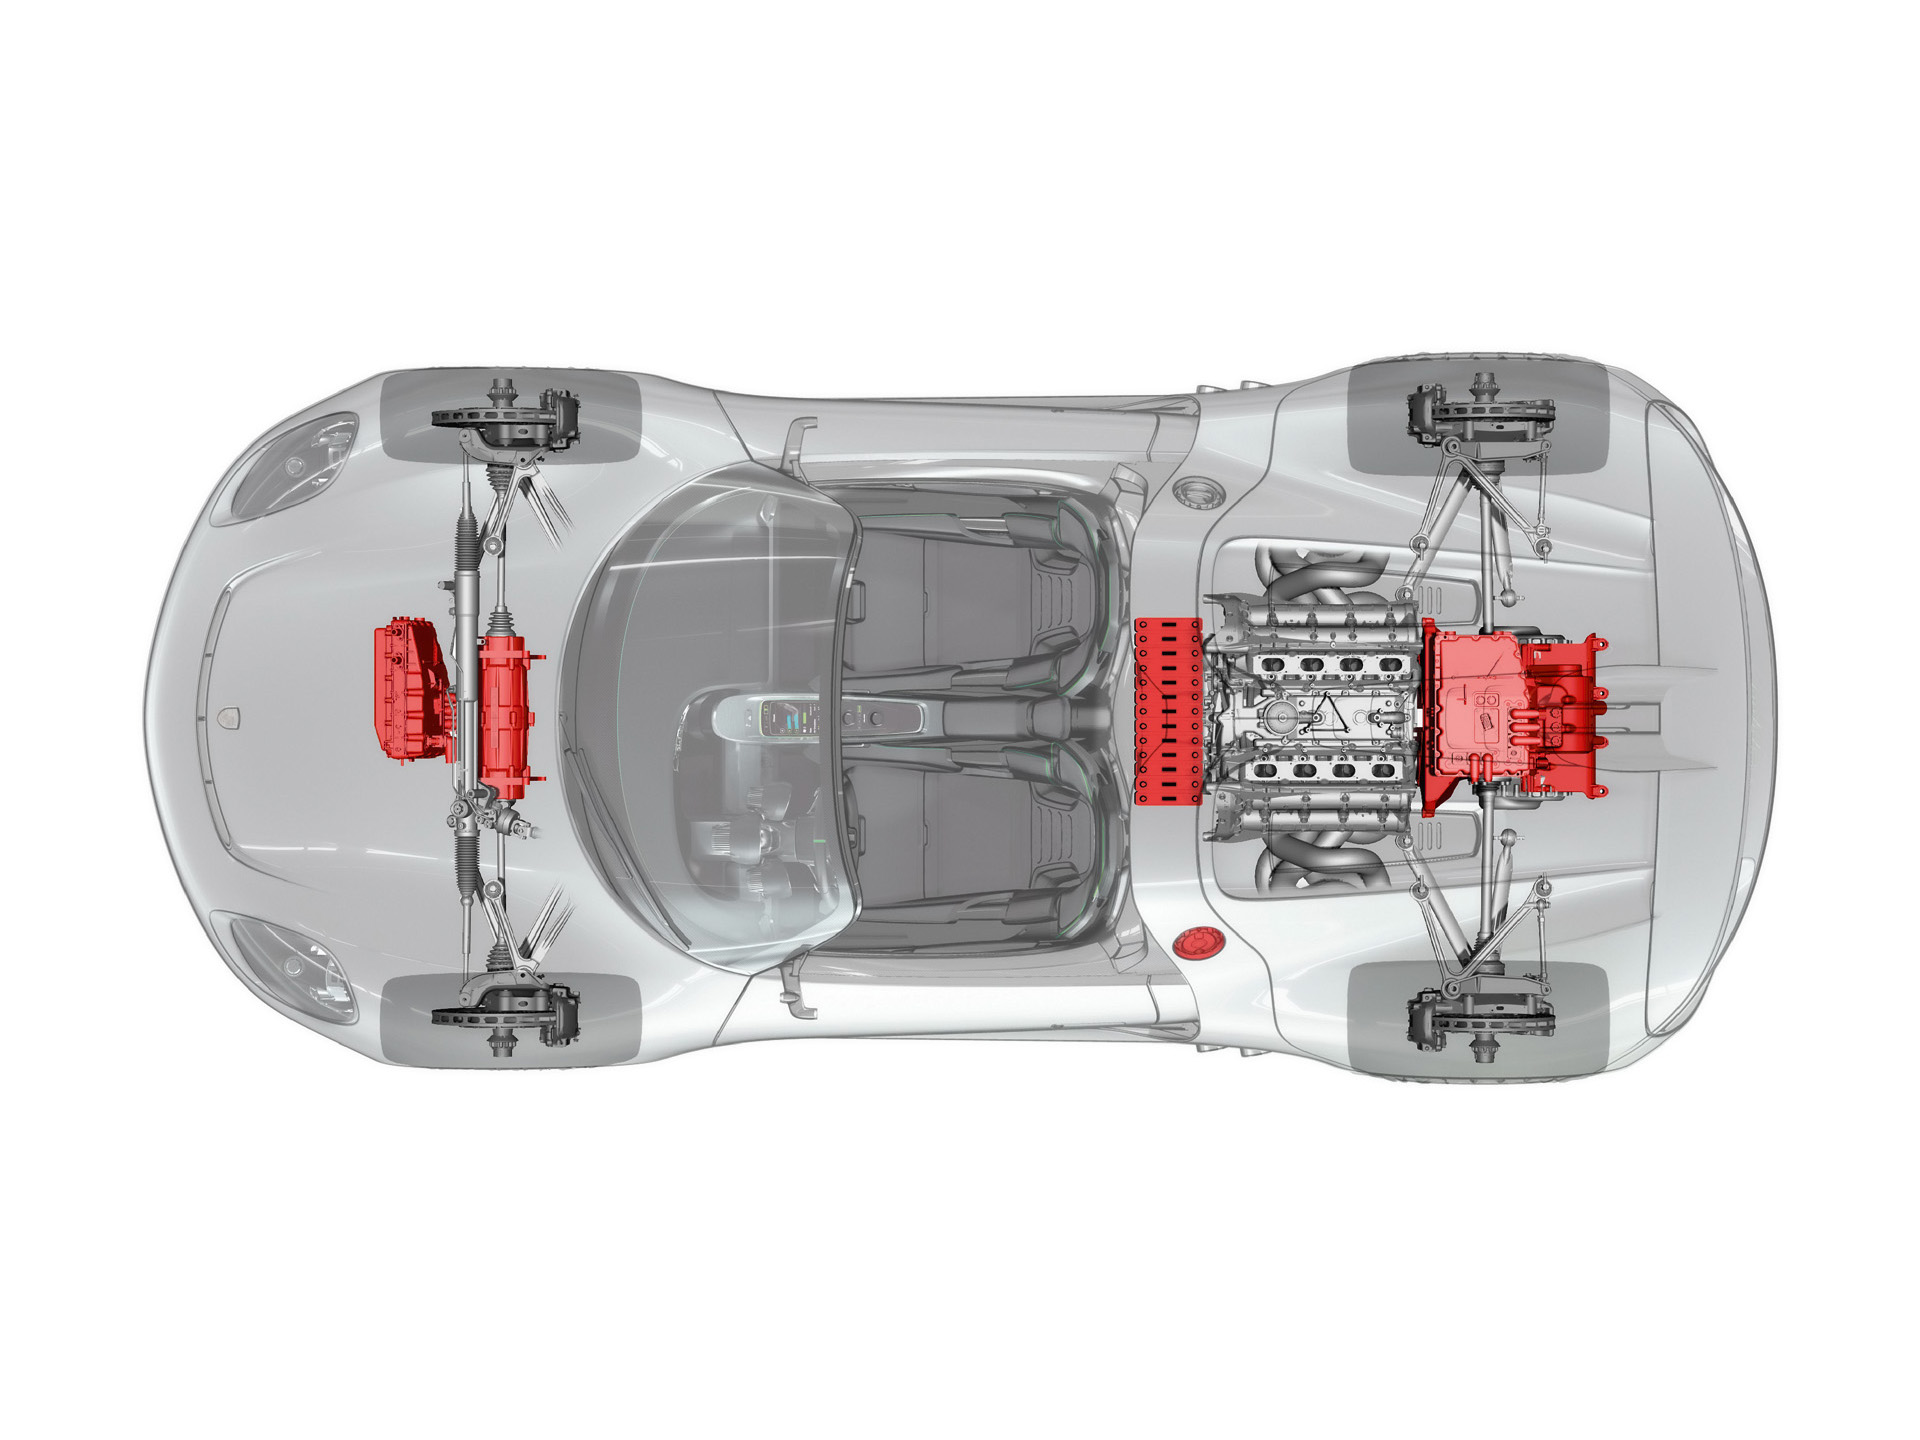 
Mecanique Porsche 918 Spyder Concept. Image 1
 